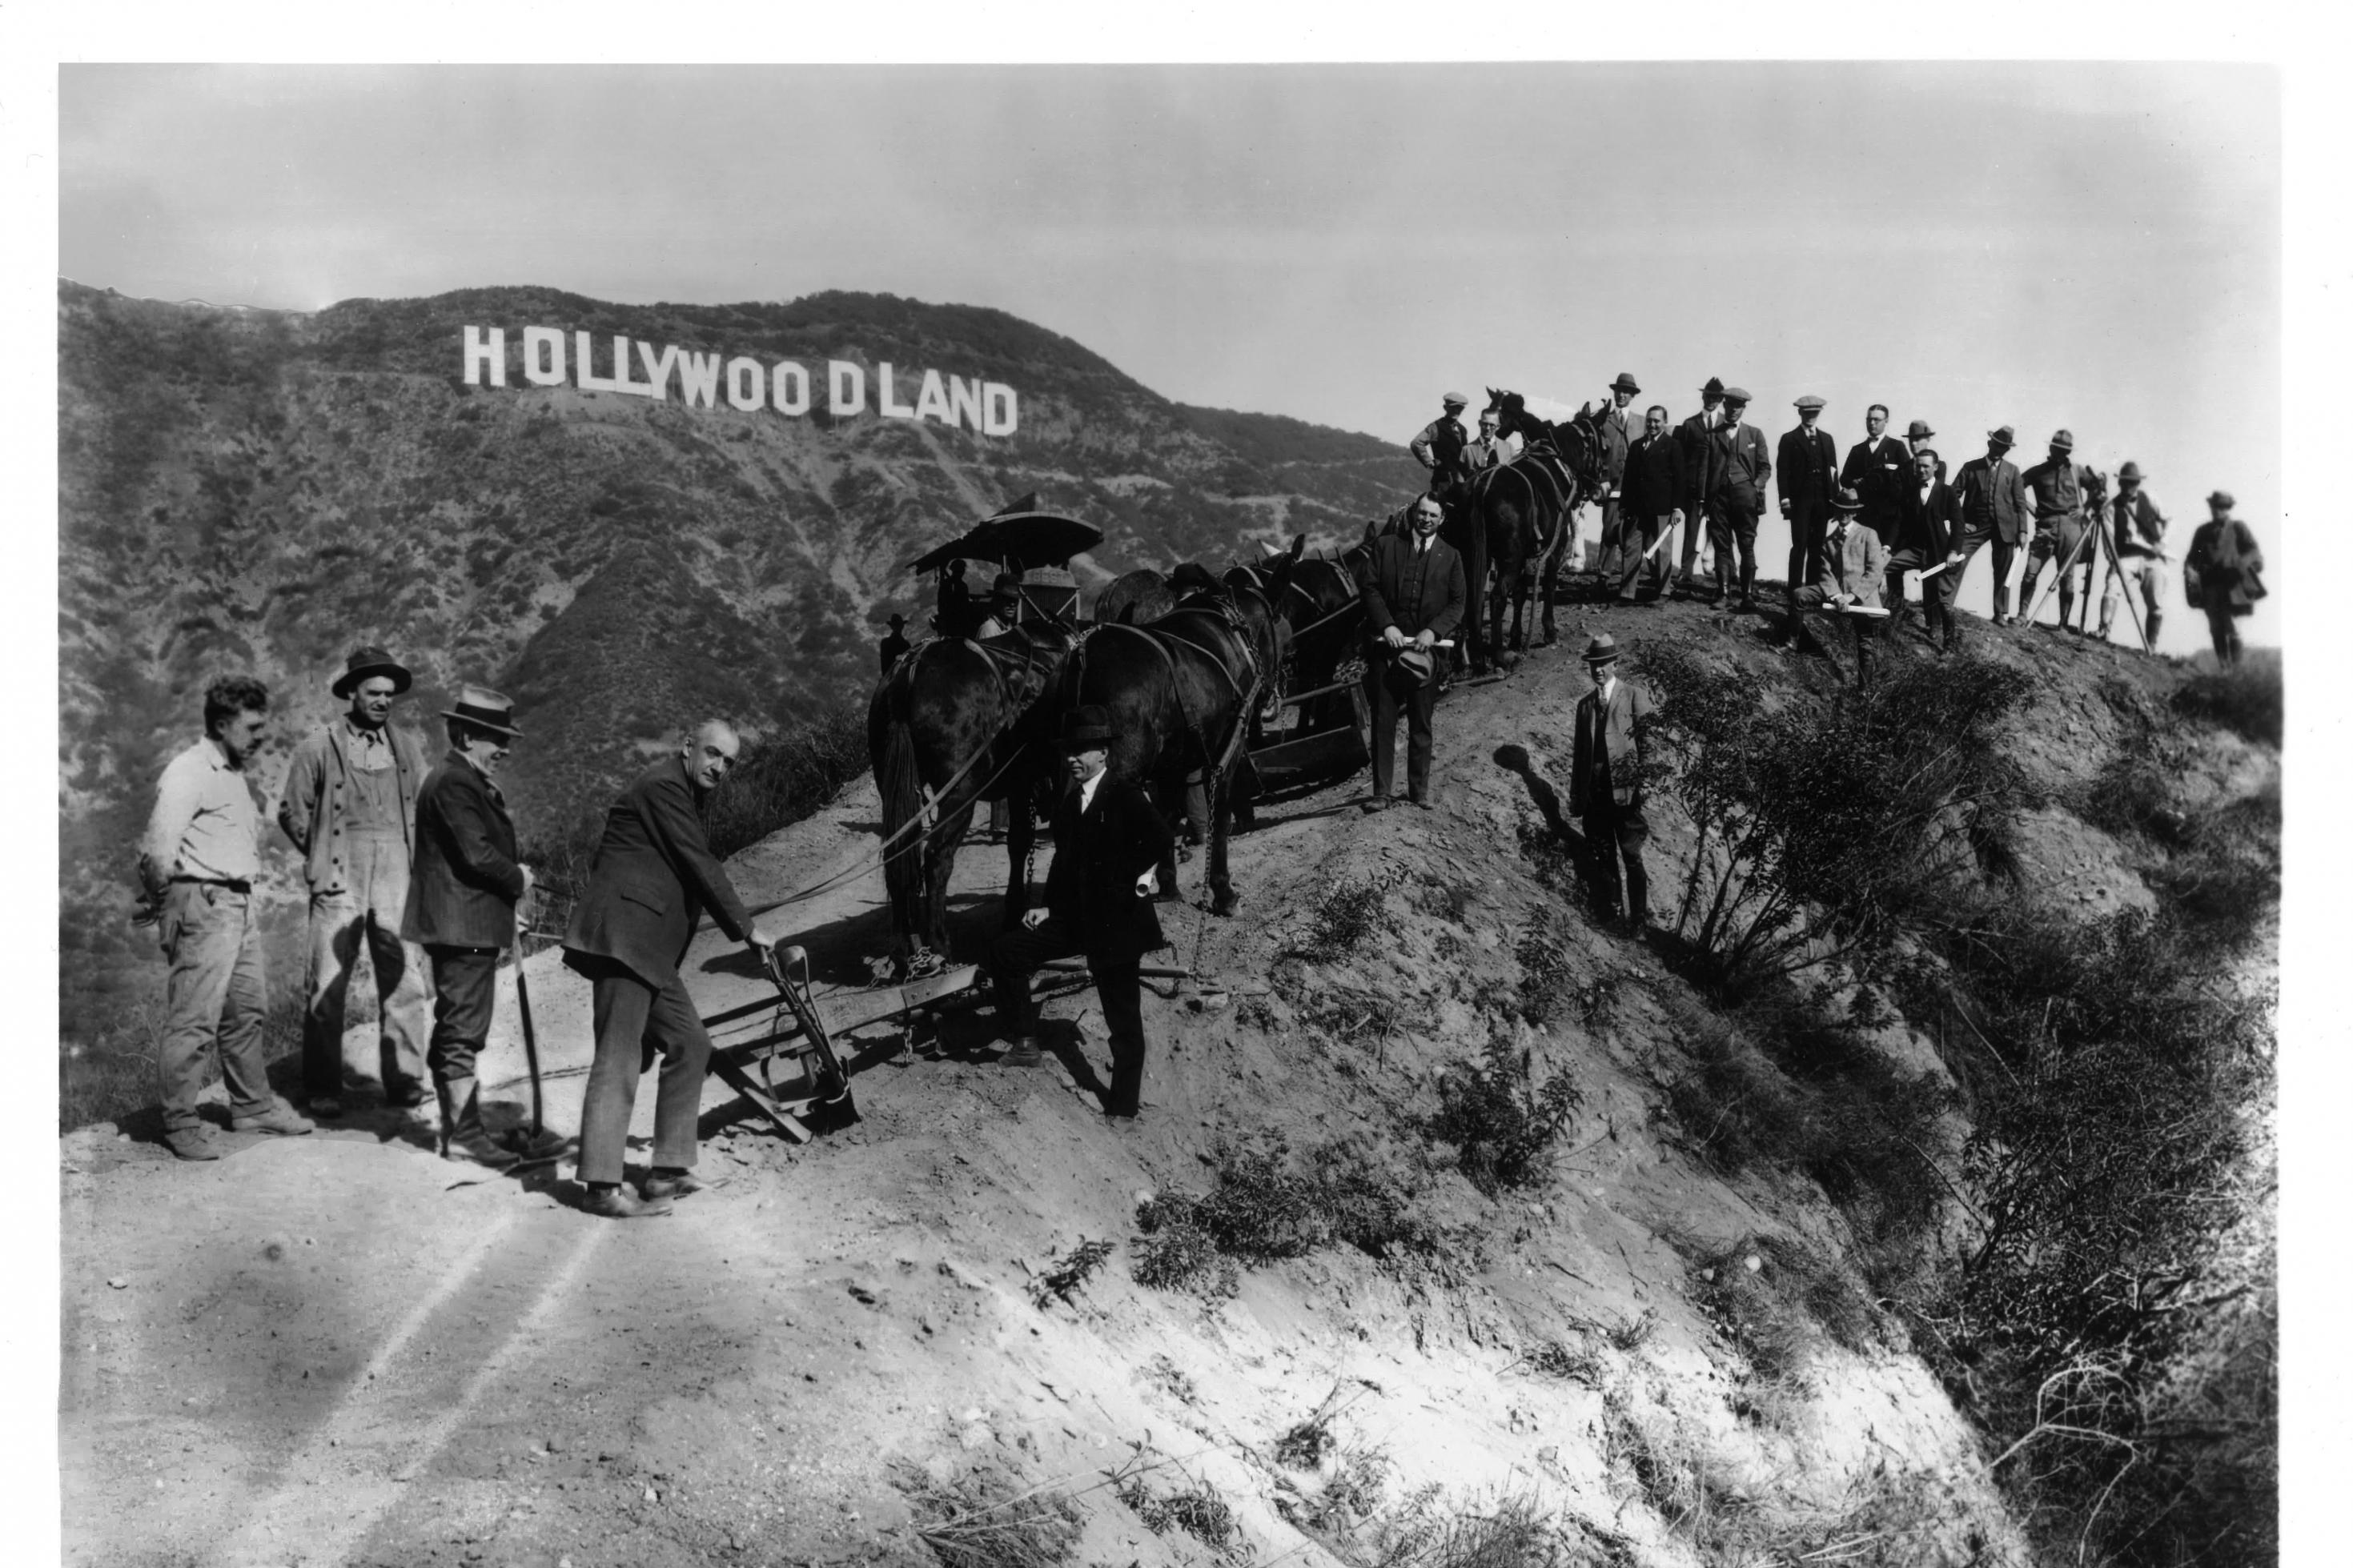 Schwarz-weiß Foto von Männern in den Hügeln vor dem Hollywood Zeichen beim Bau 1923. Damals noch Hollywoodland. Mit Eseln und Dampfmaschinen auf einem unbefestigten Weg.